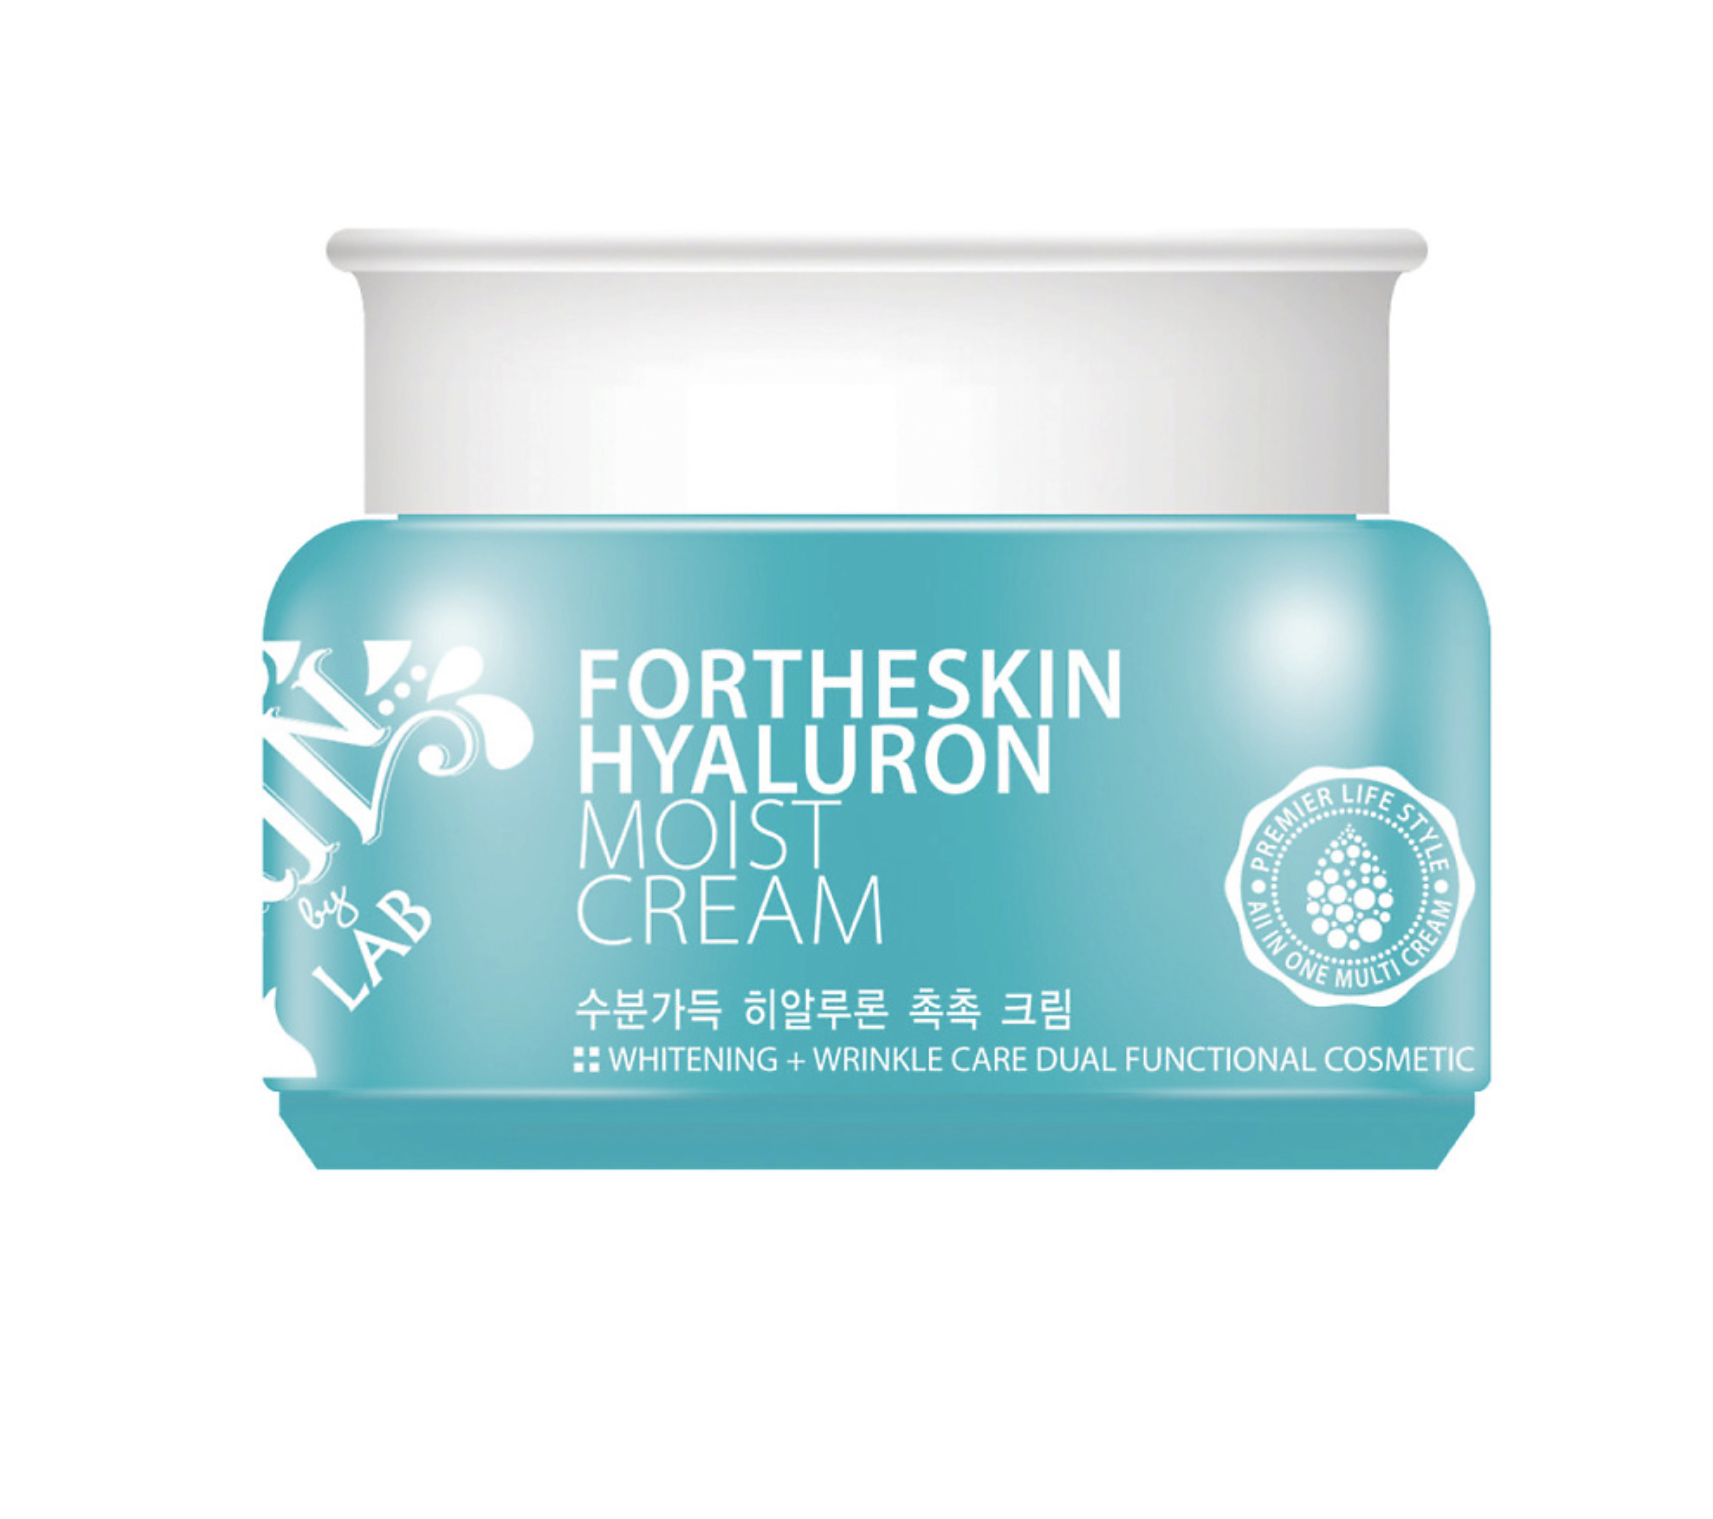  For The Skin -     Hyaluron Moist Cream 100 